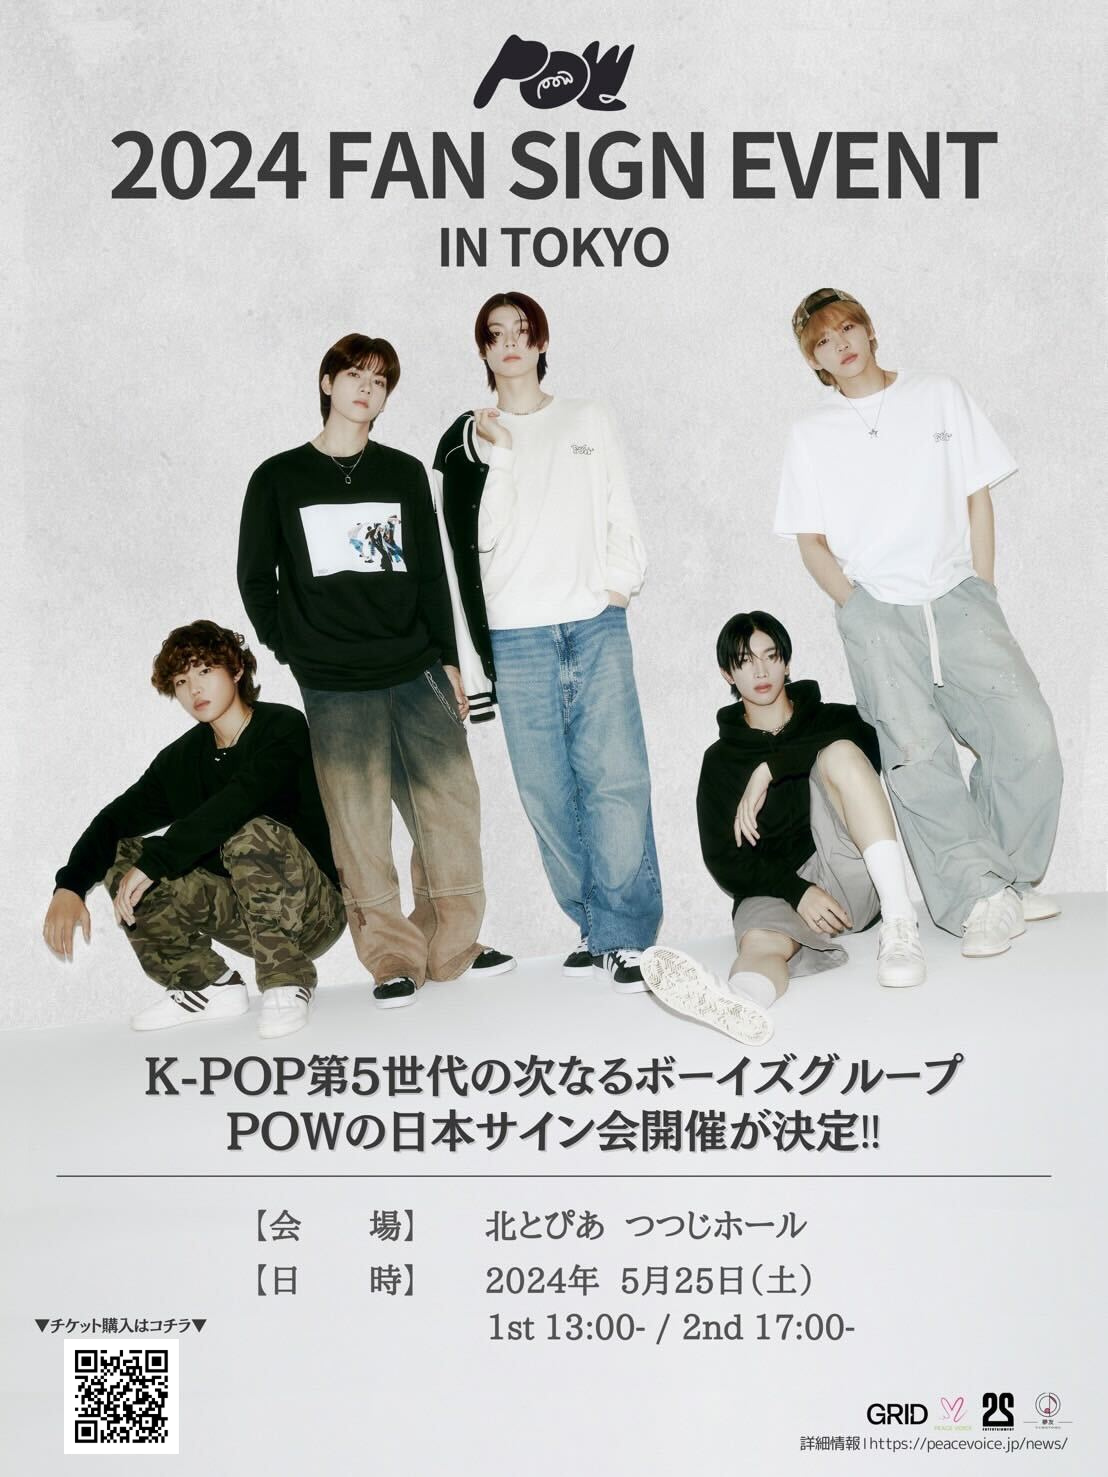 K-POP第5世代の次なるボーイズグループPOW(パウ)、 日本サイン会『POW 2024 FAN SIGN EVENT IN TOKYO』の開催